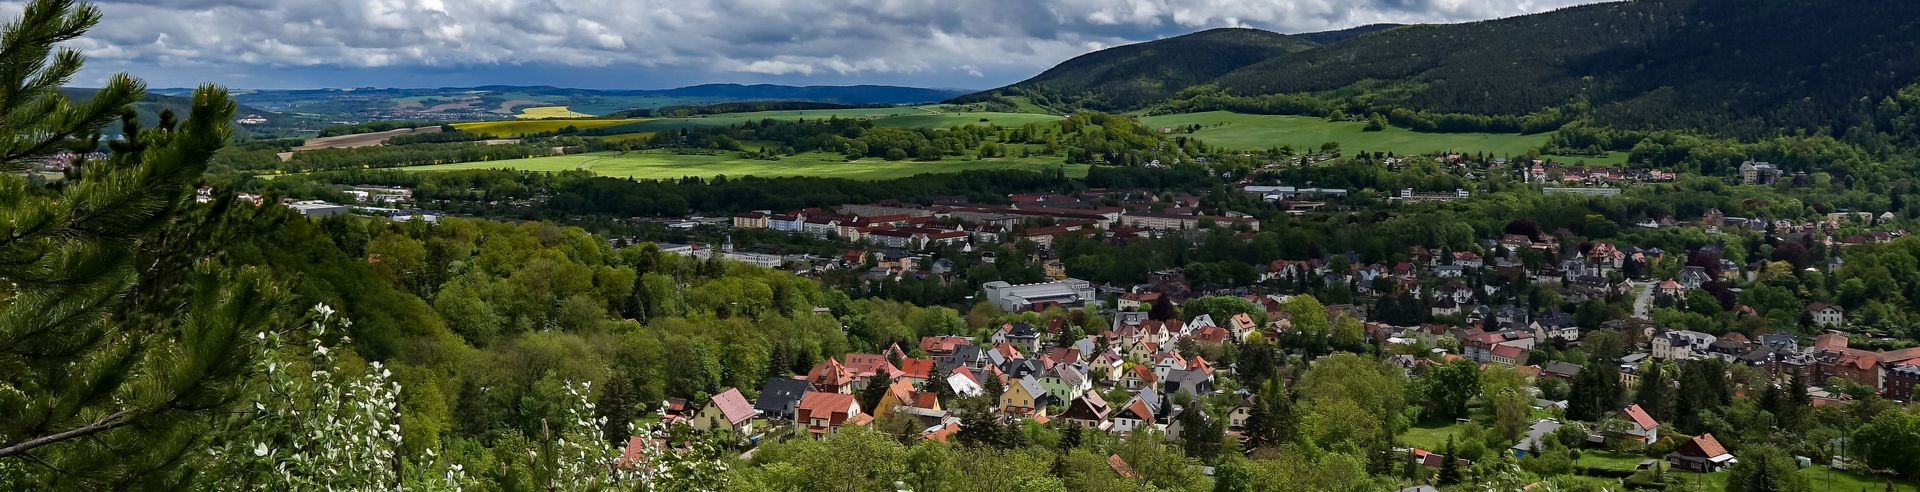 Blick über das sommerliche Bad Blankenburg, Thüringen